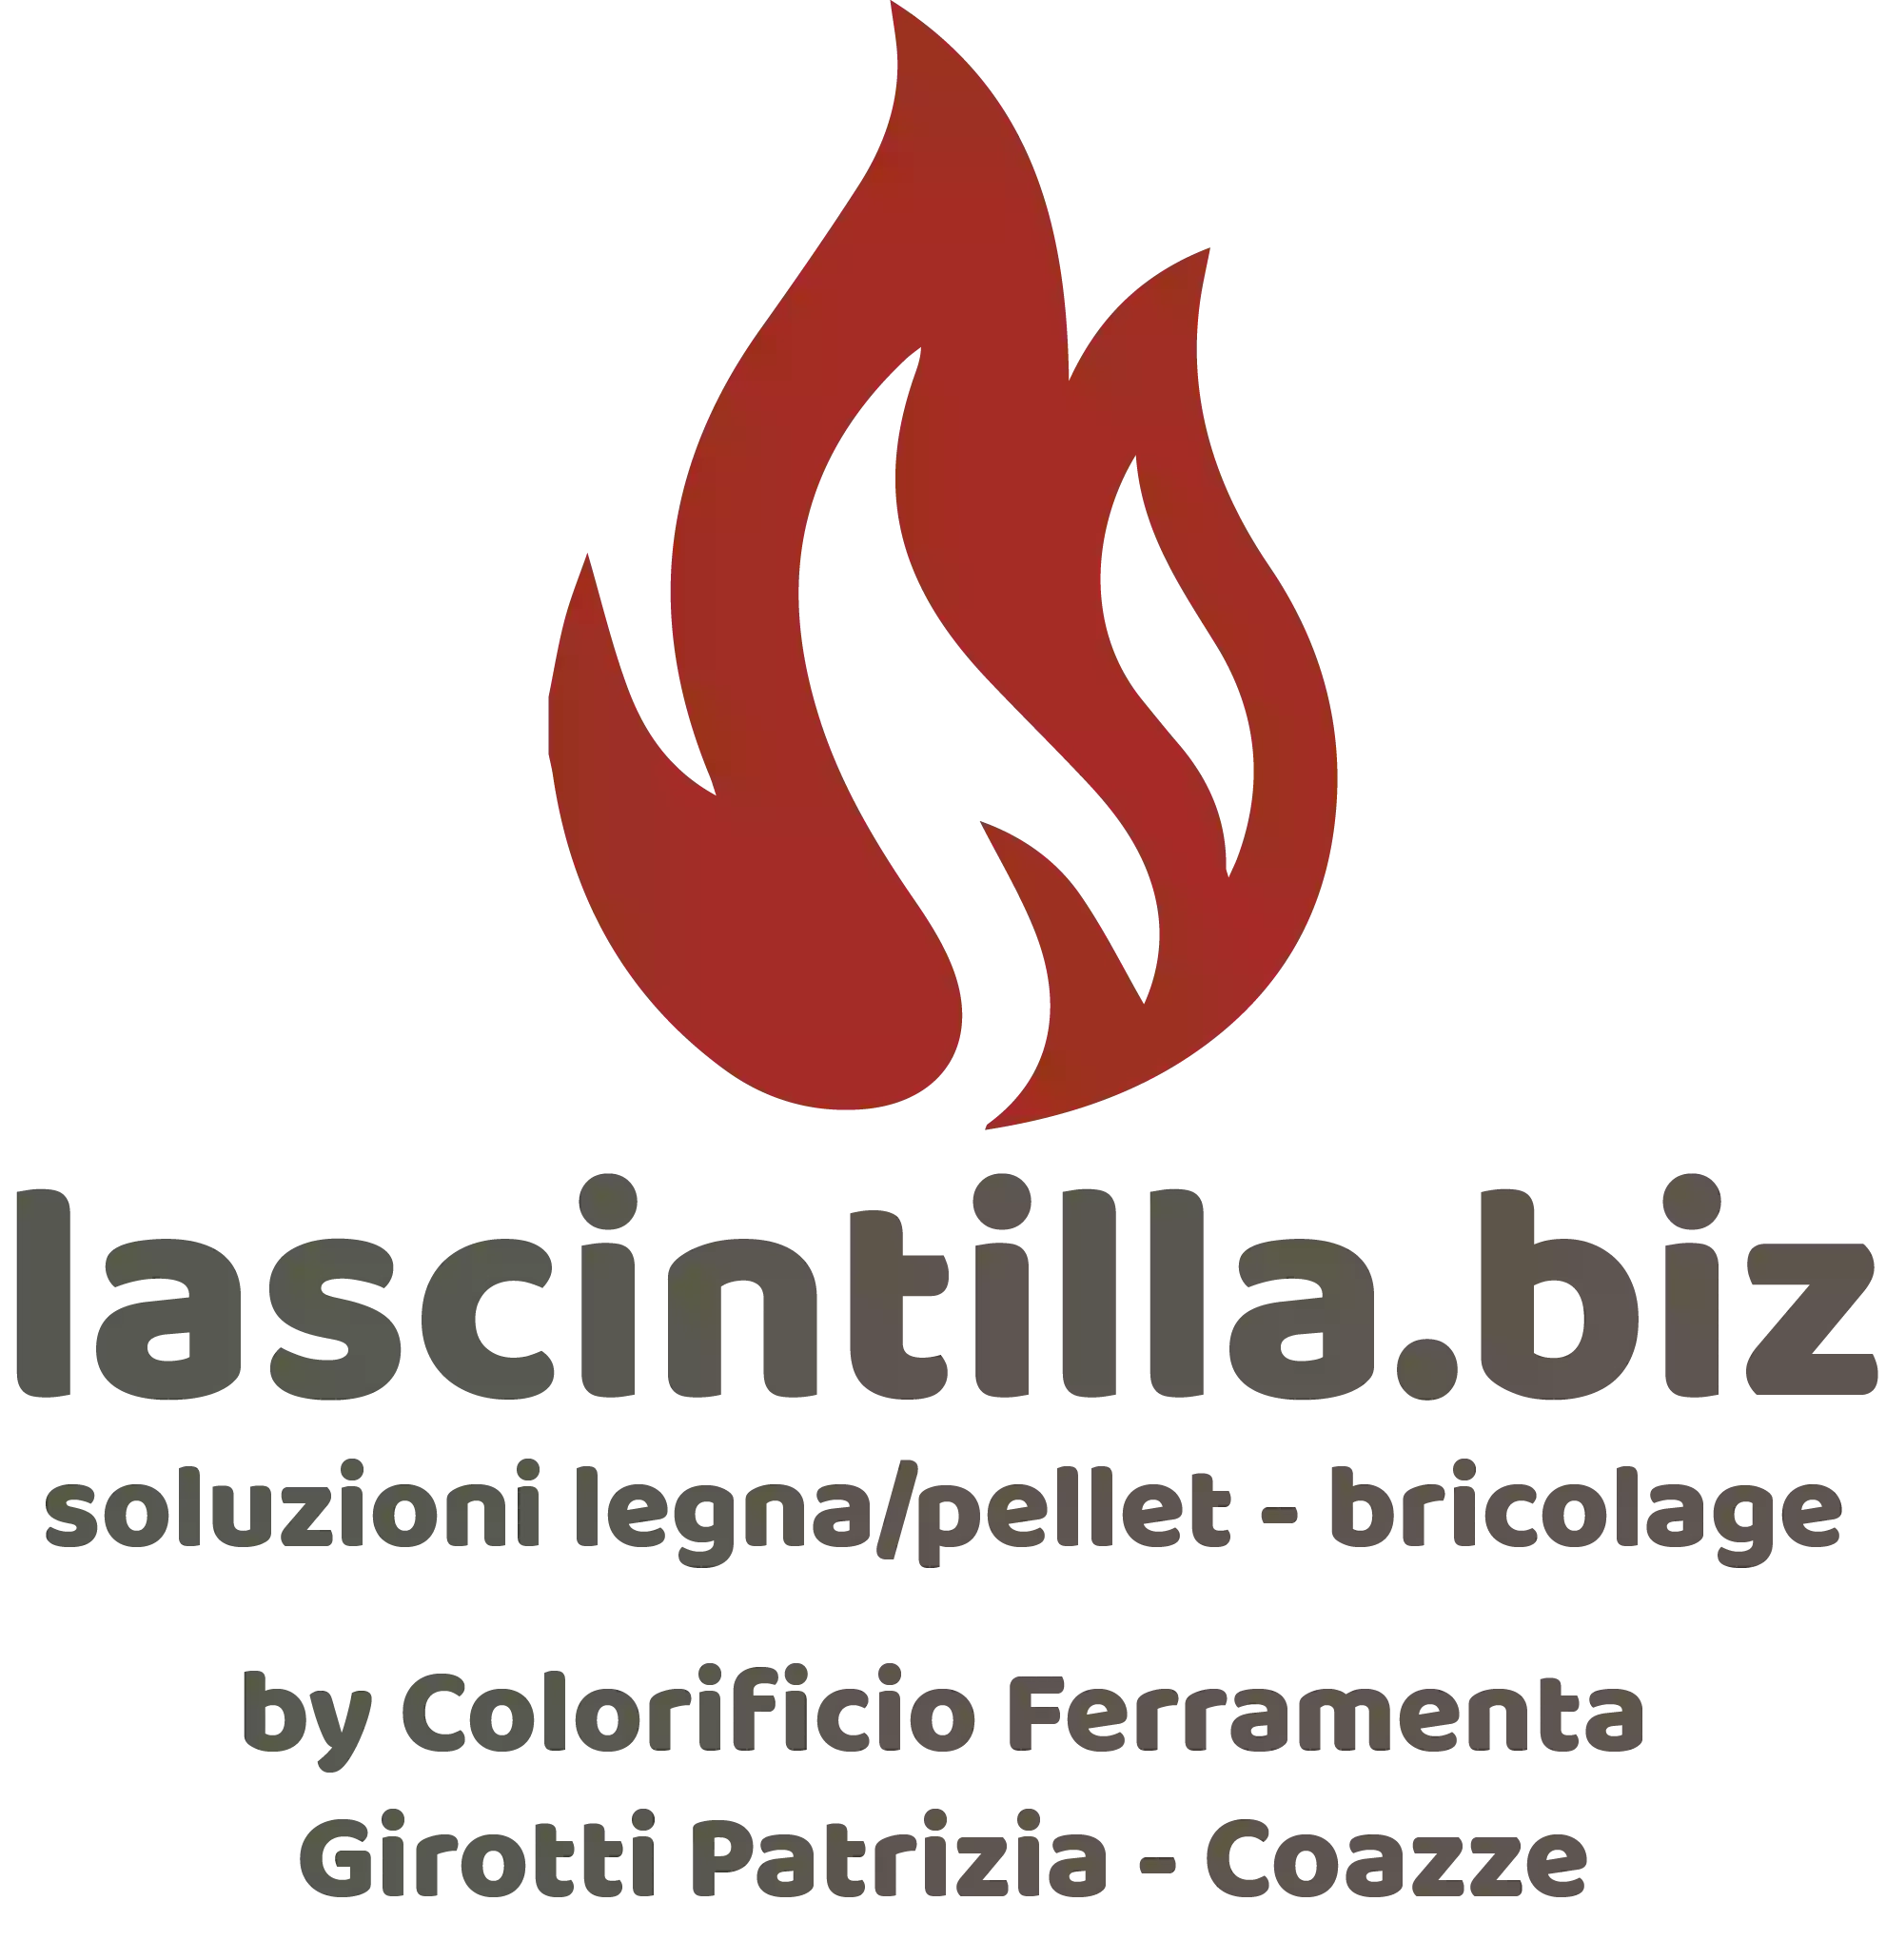 Lascintilla.biz - Colorificio Ferramenta Girotti Patrizia